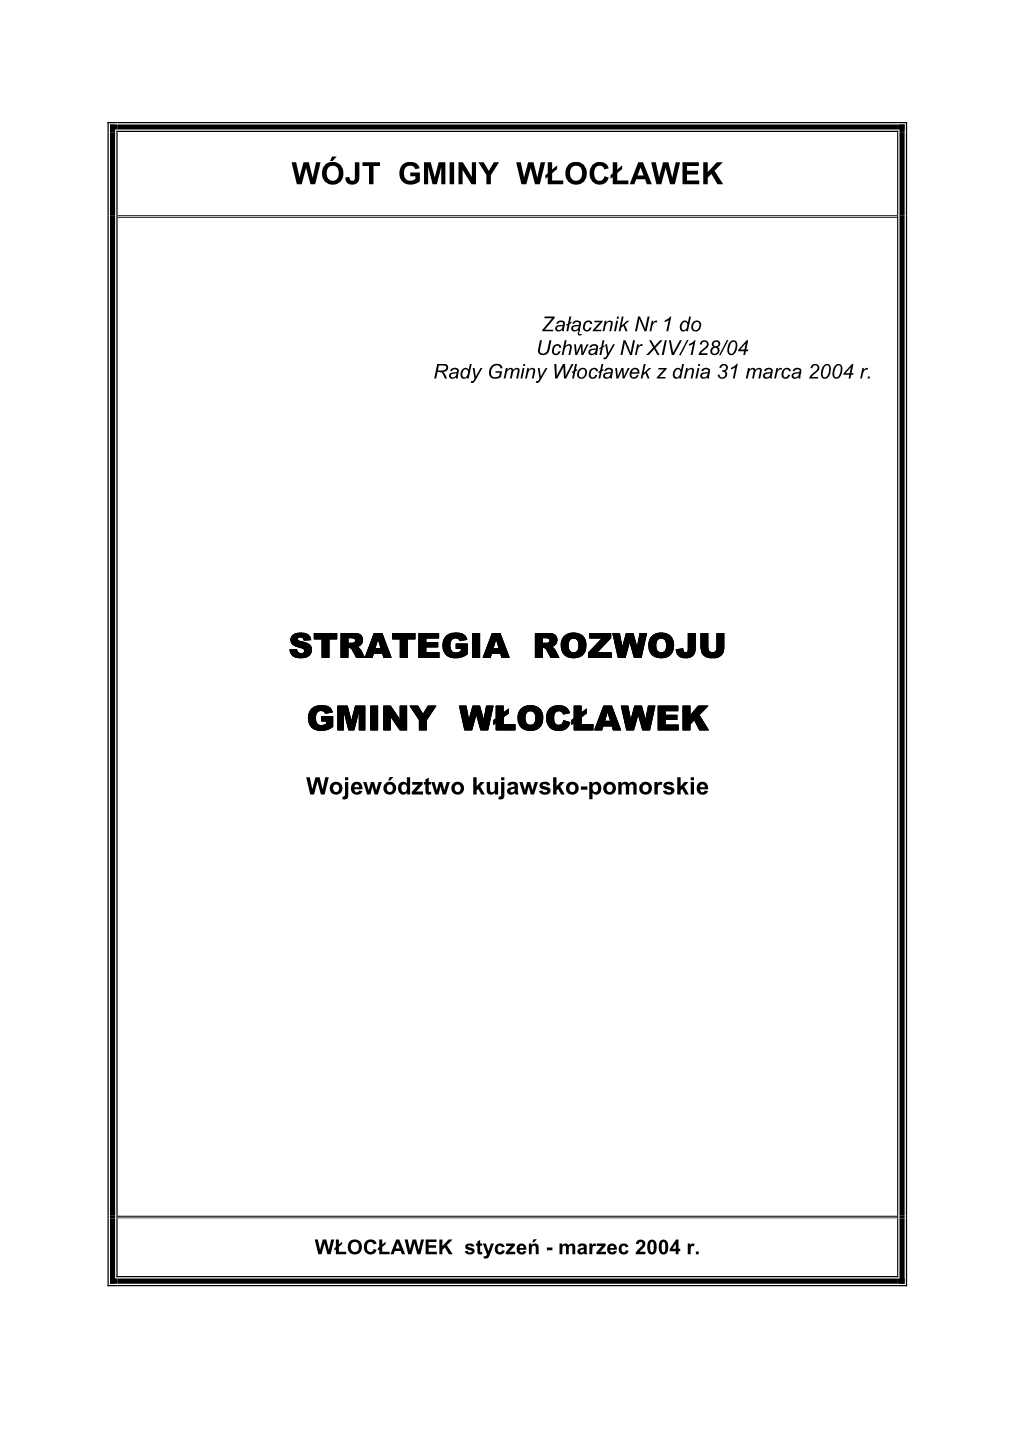 Strategia Gmina Wloclawek